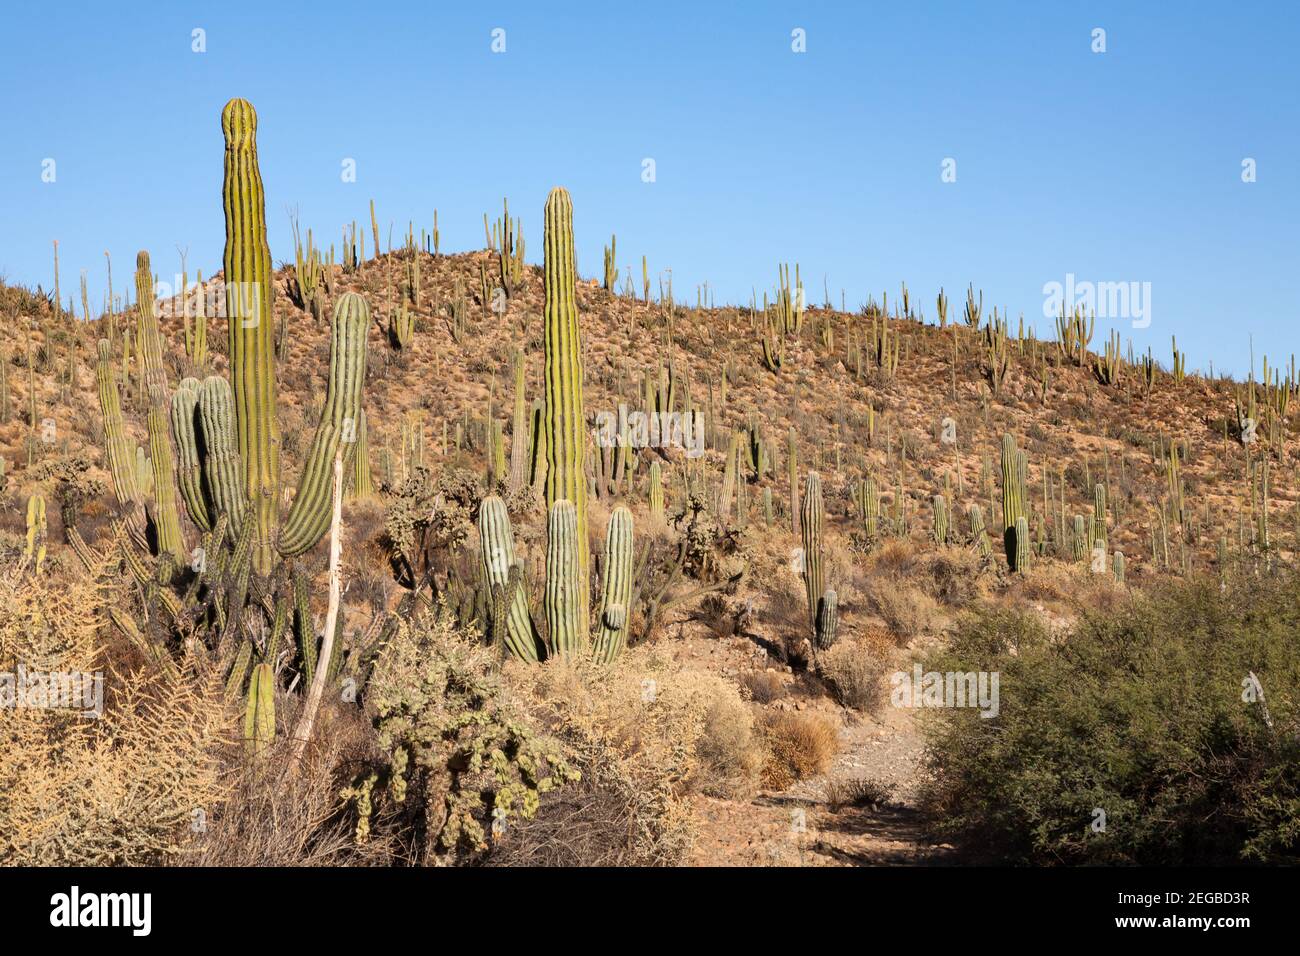 Pletora di cardon o cactus elefante Pachycereus pringlei a Baja California, Messico Foto Stock